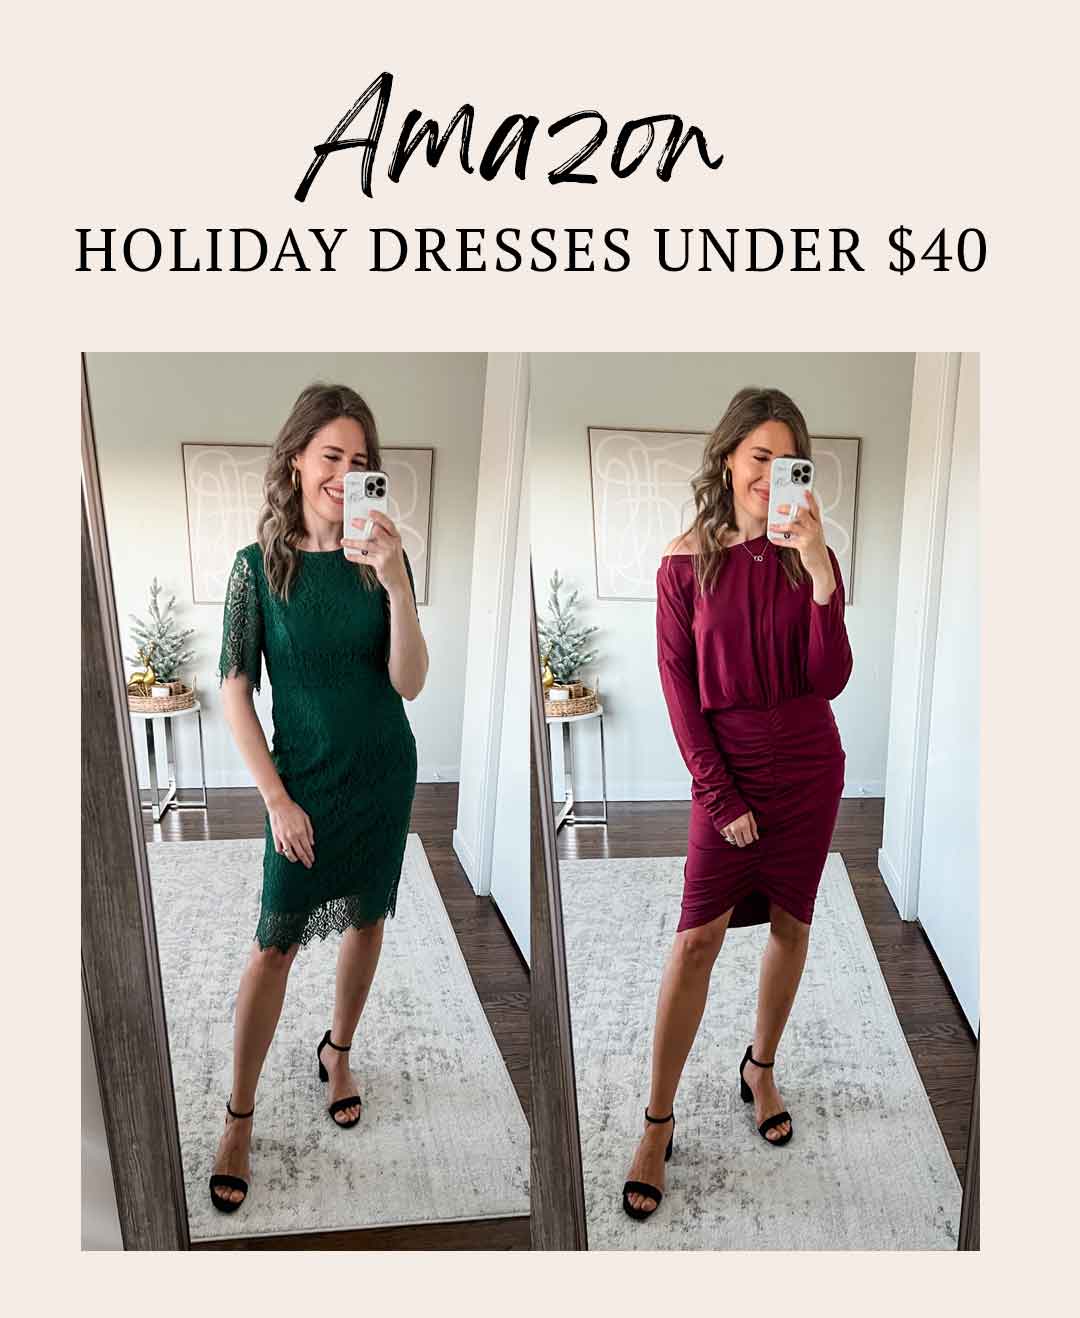 Amazon holiday dresses under $40